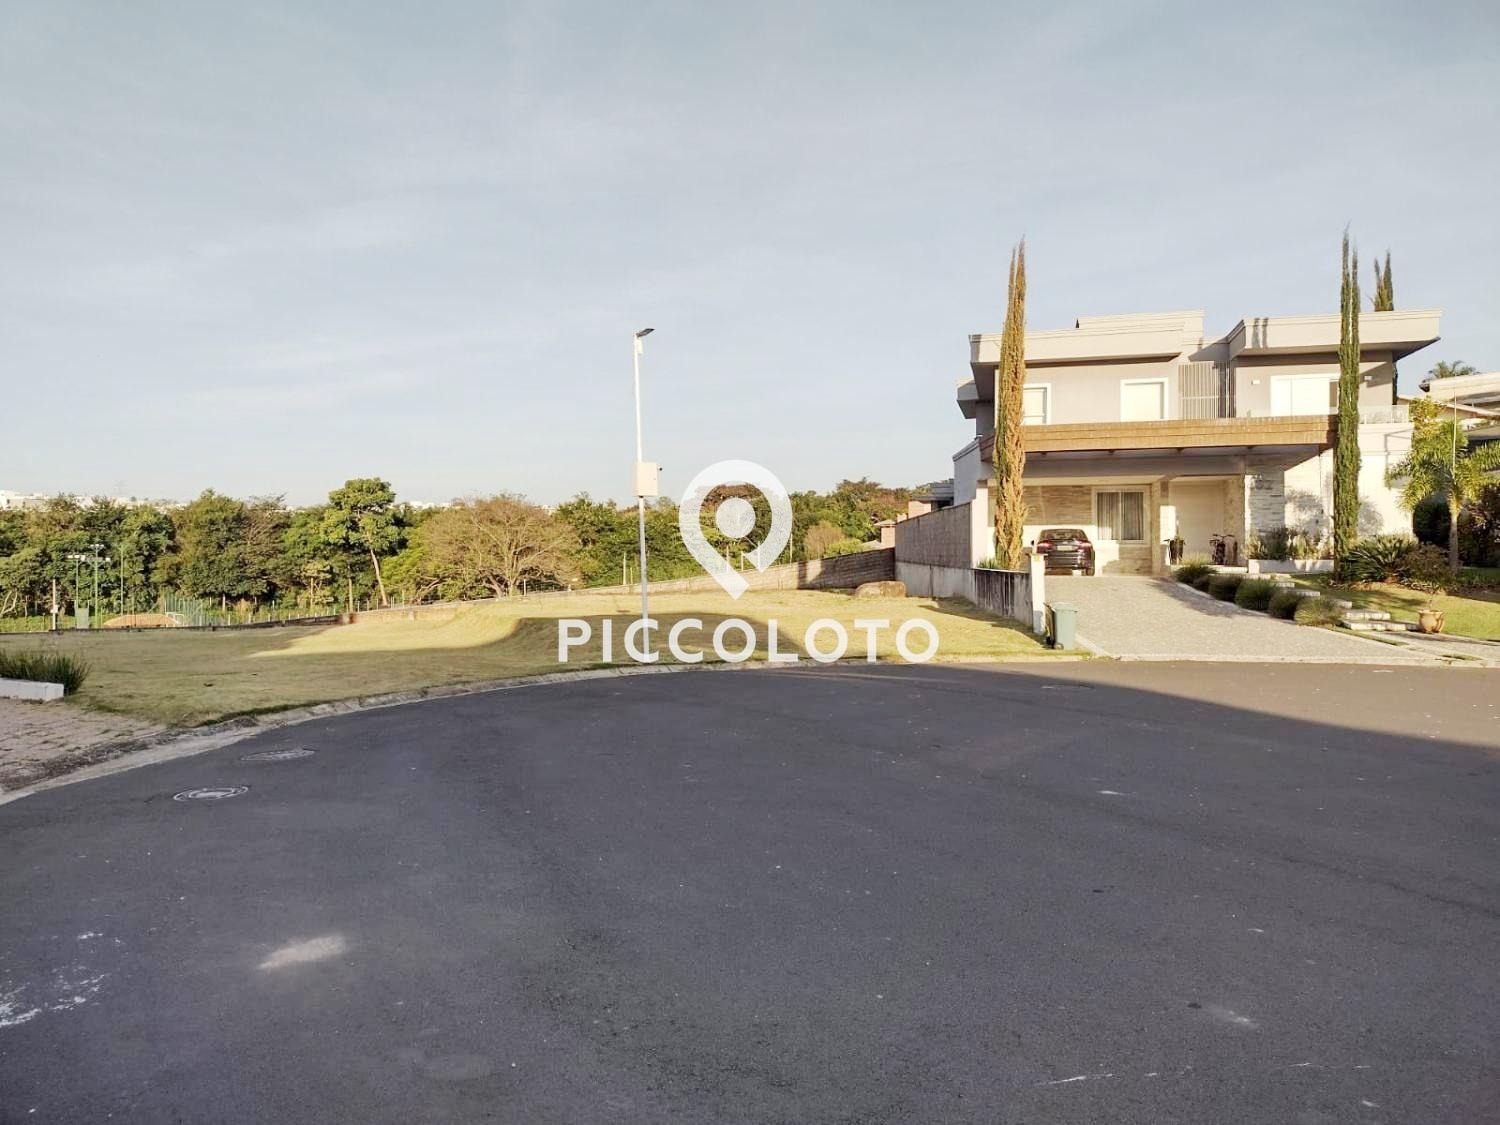 Piccoloto -Terreno à venda no Vila dos Plátanos em Campinas